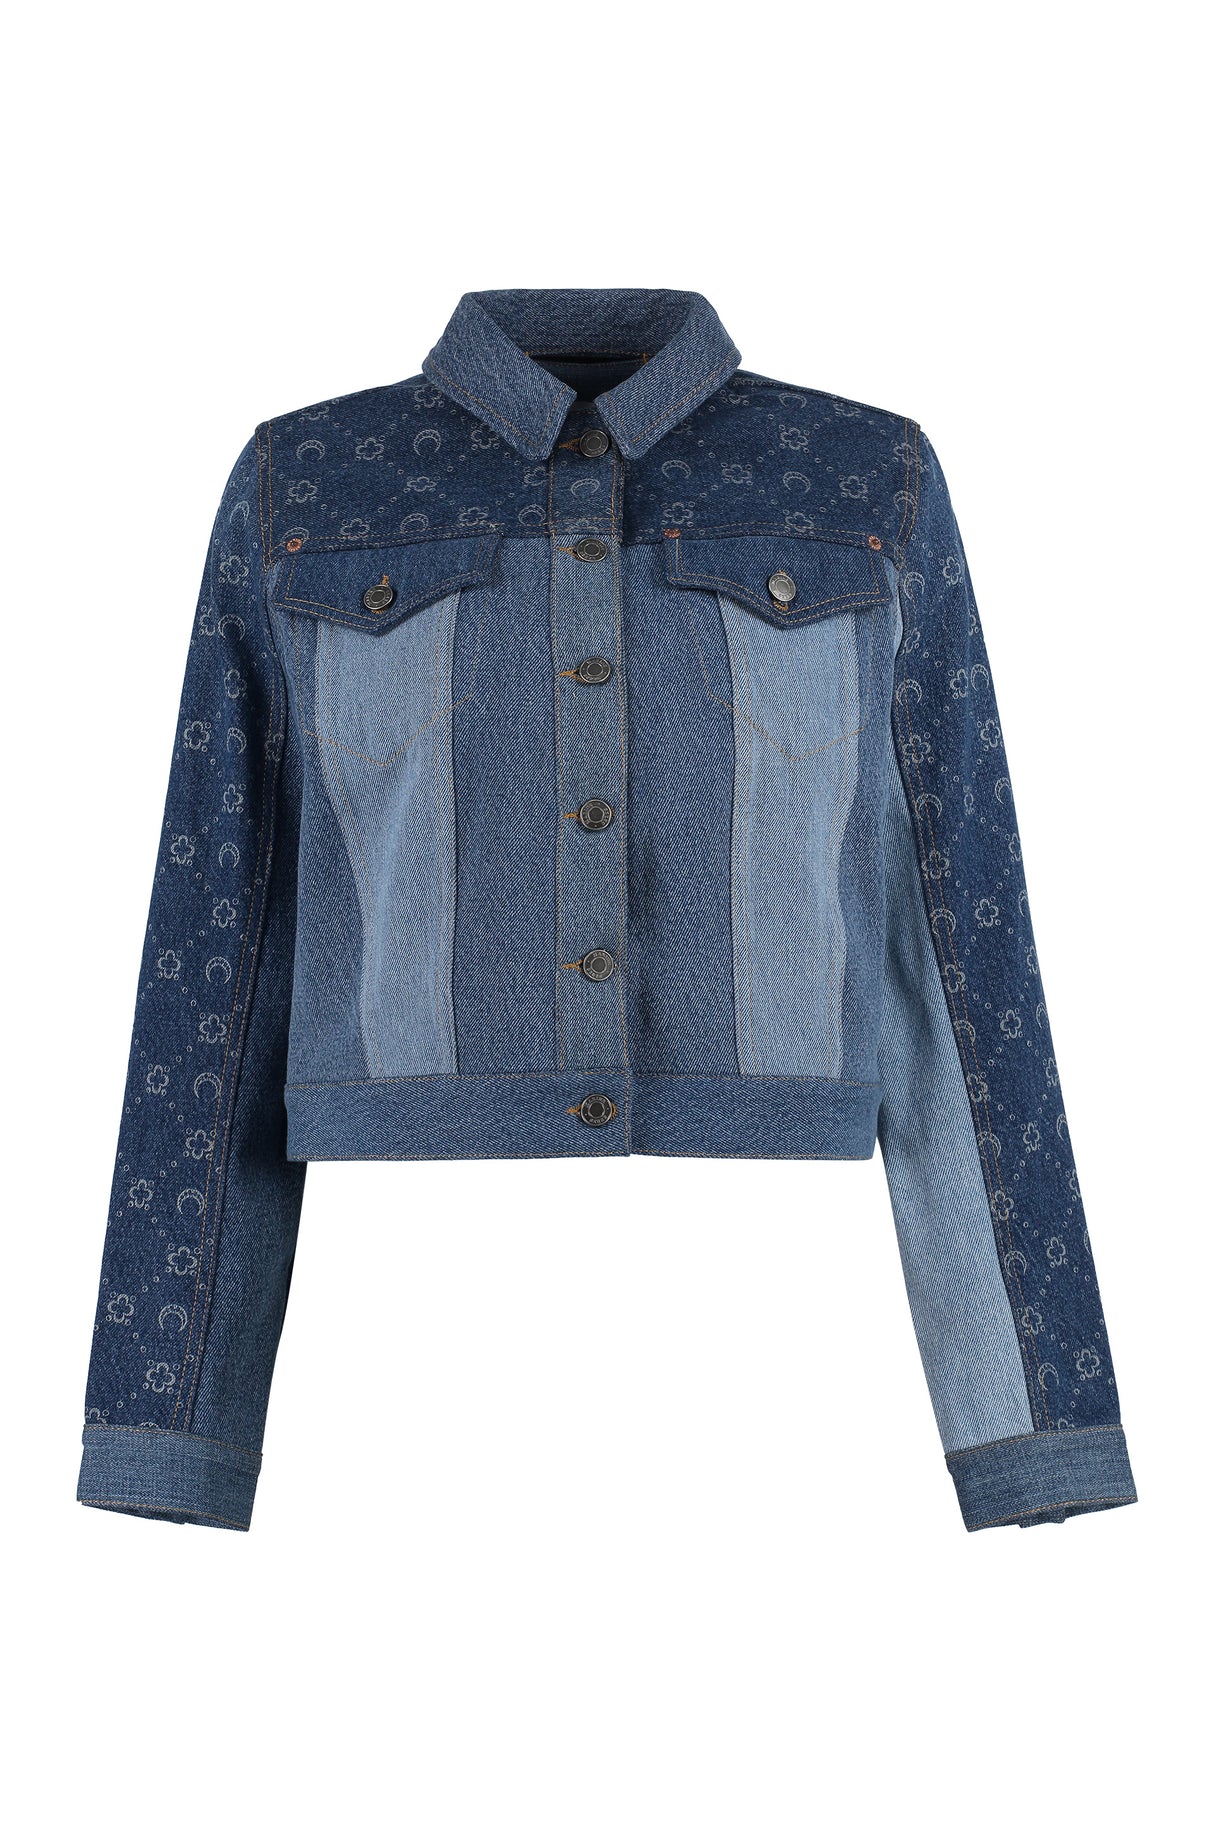 藍色牛仔外套，女款，附有潮流字母圖案和對比縫紉